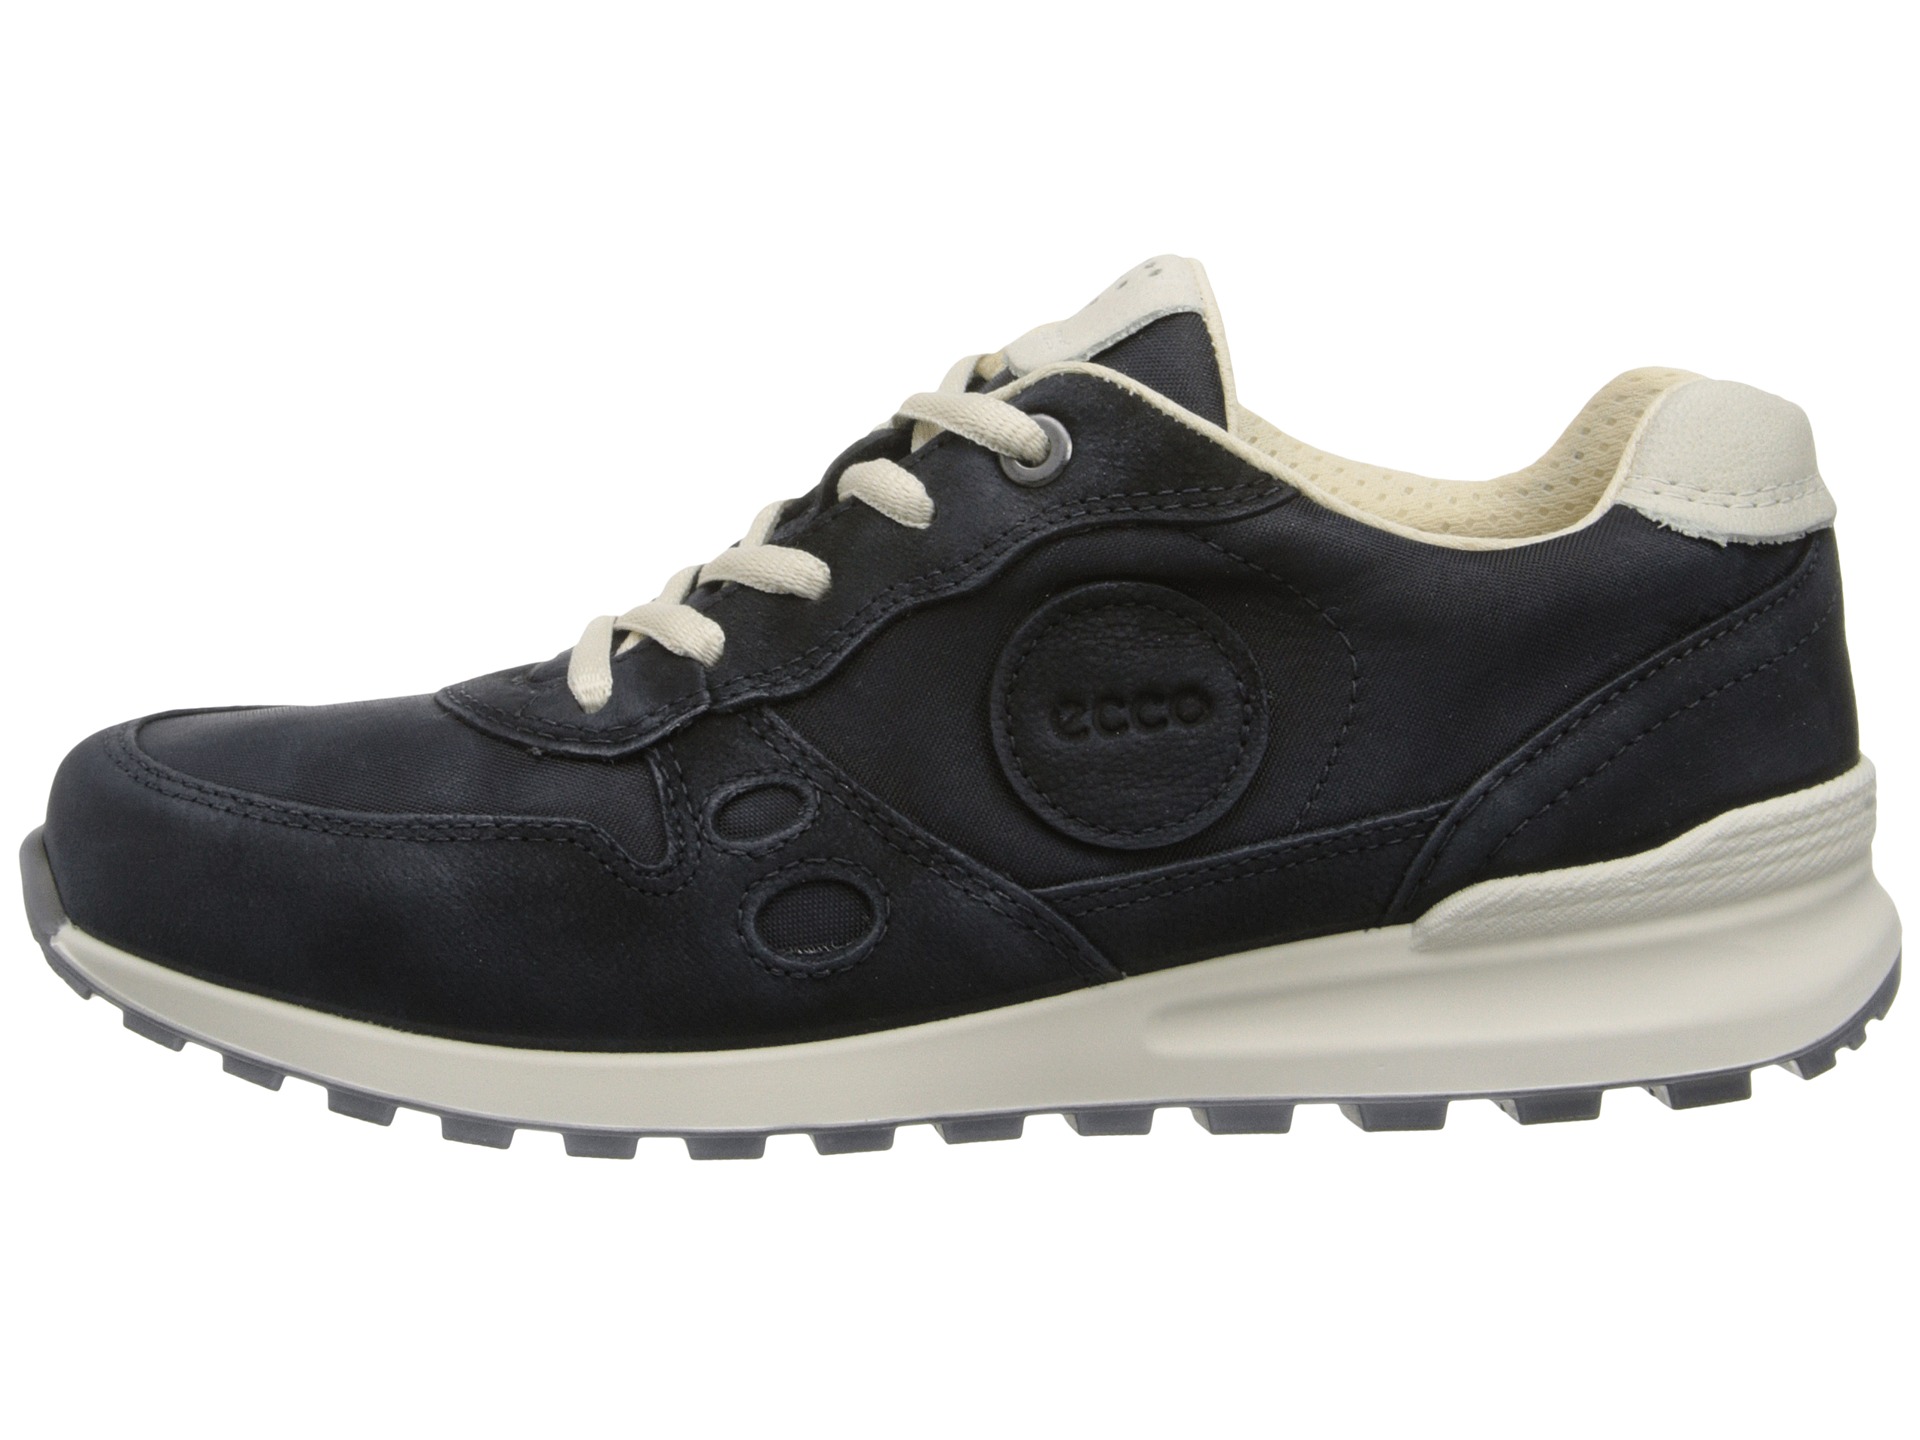 ECCO CS14 Retro Sneaker - Zappos Free Shipping BOTH Ways